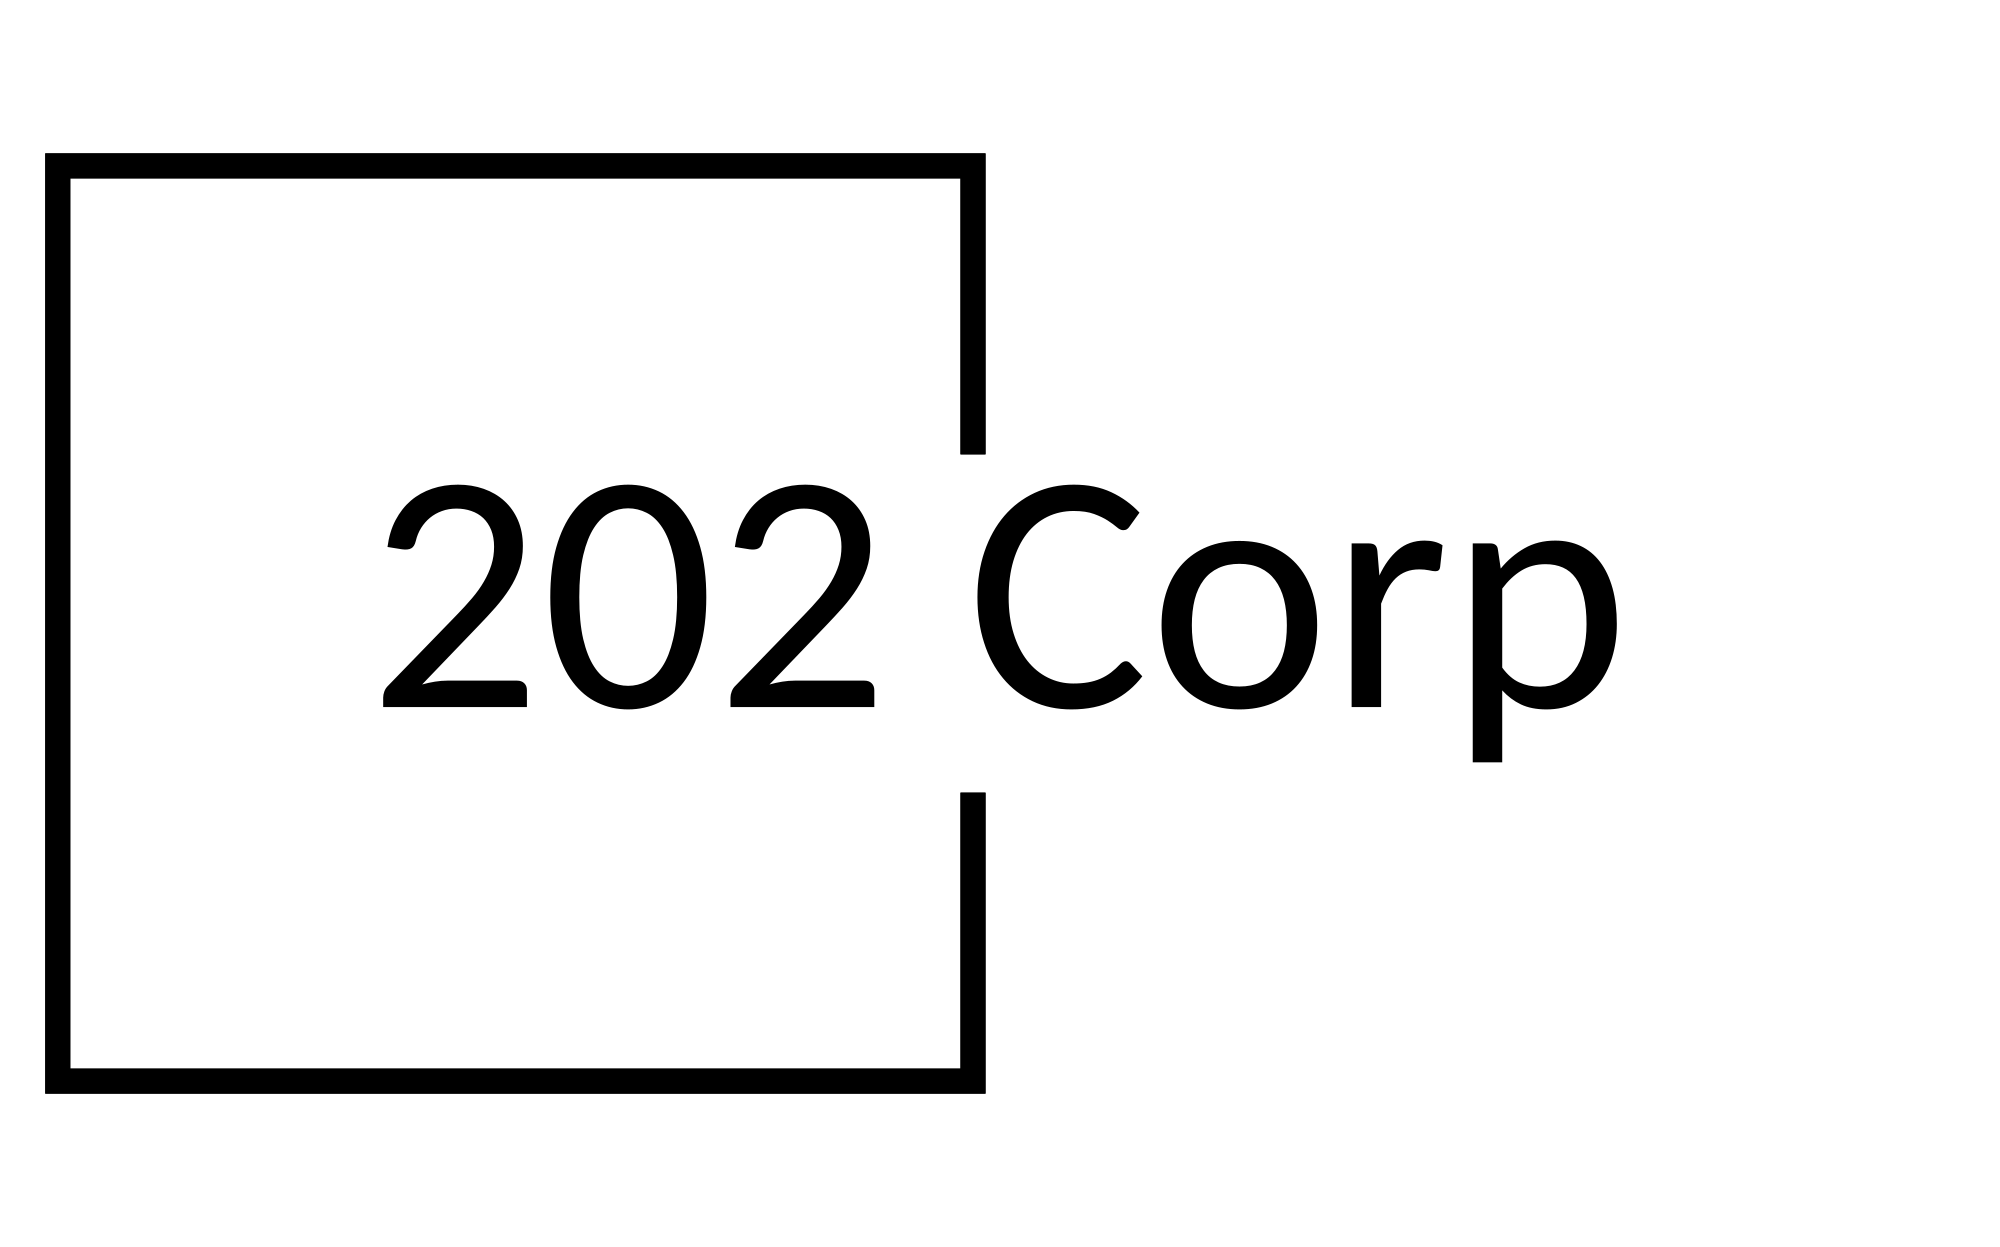 202 Corp Co., Ltd